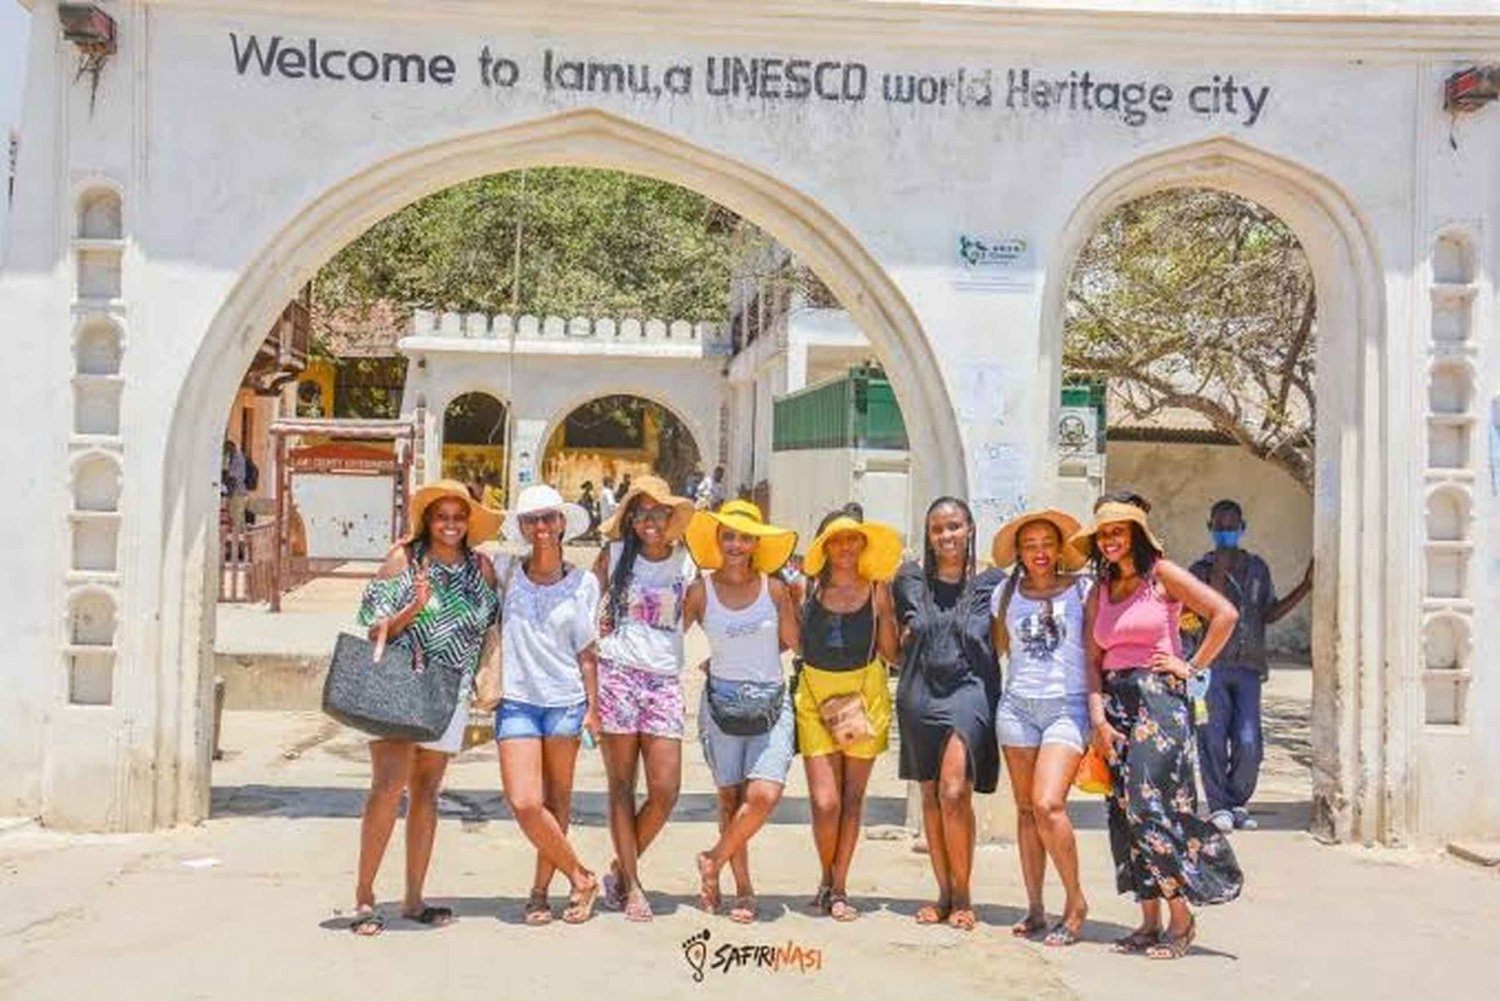 Tour storico-culturale della città di Lamu a piedi.